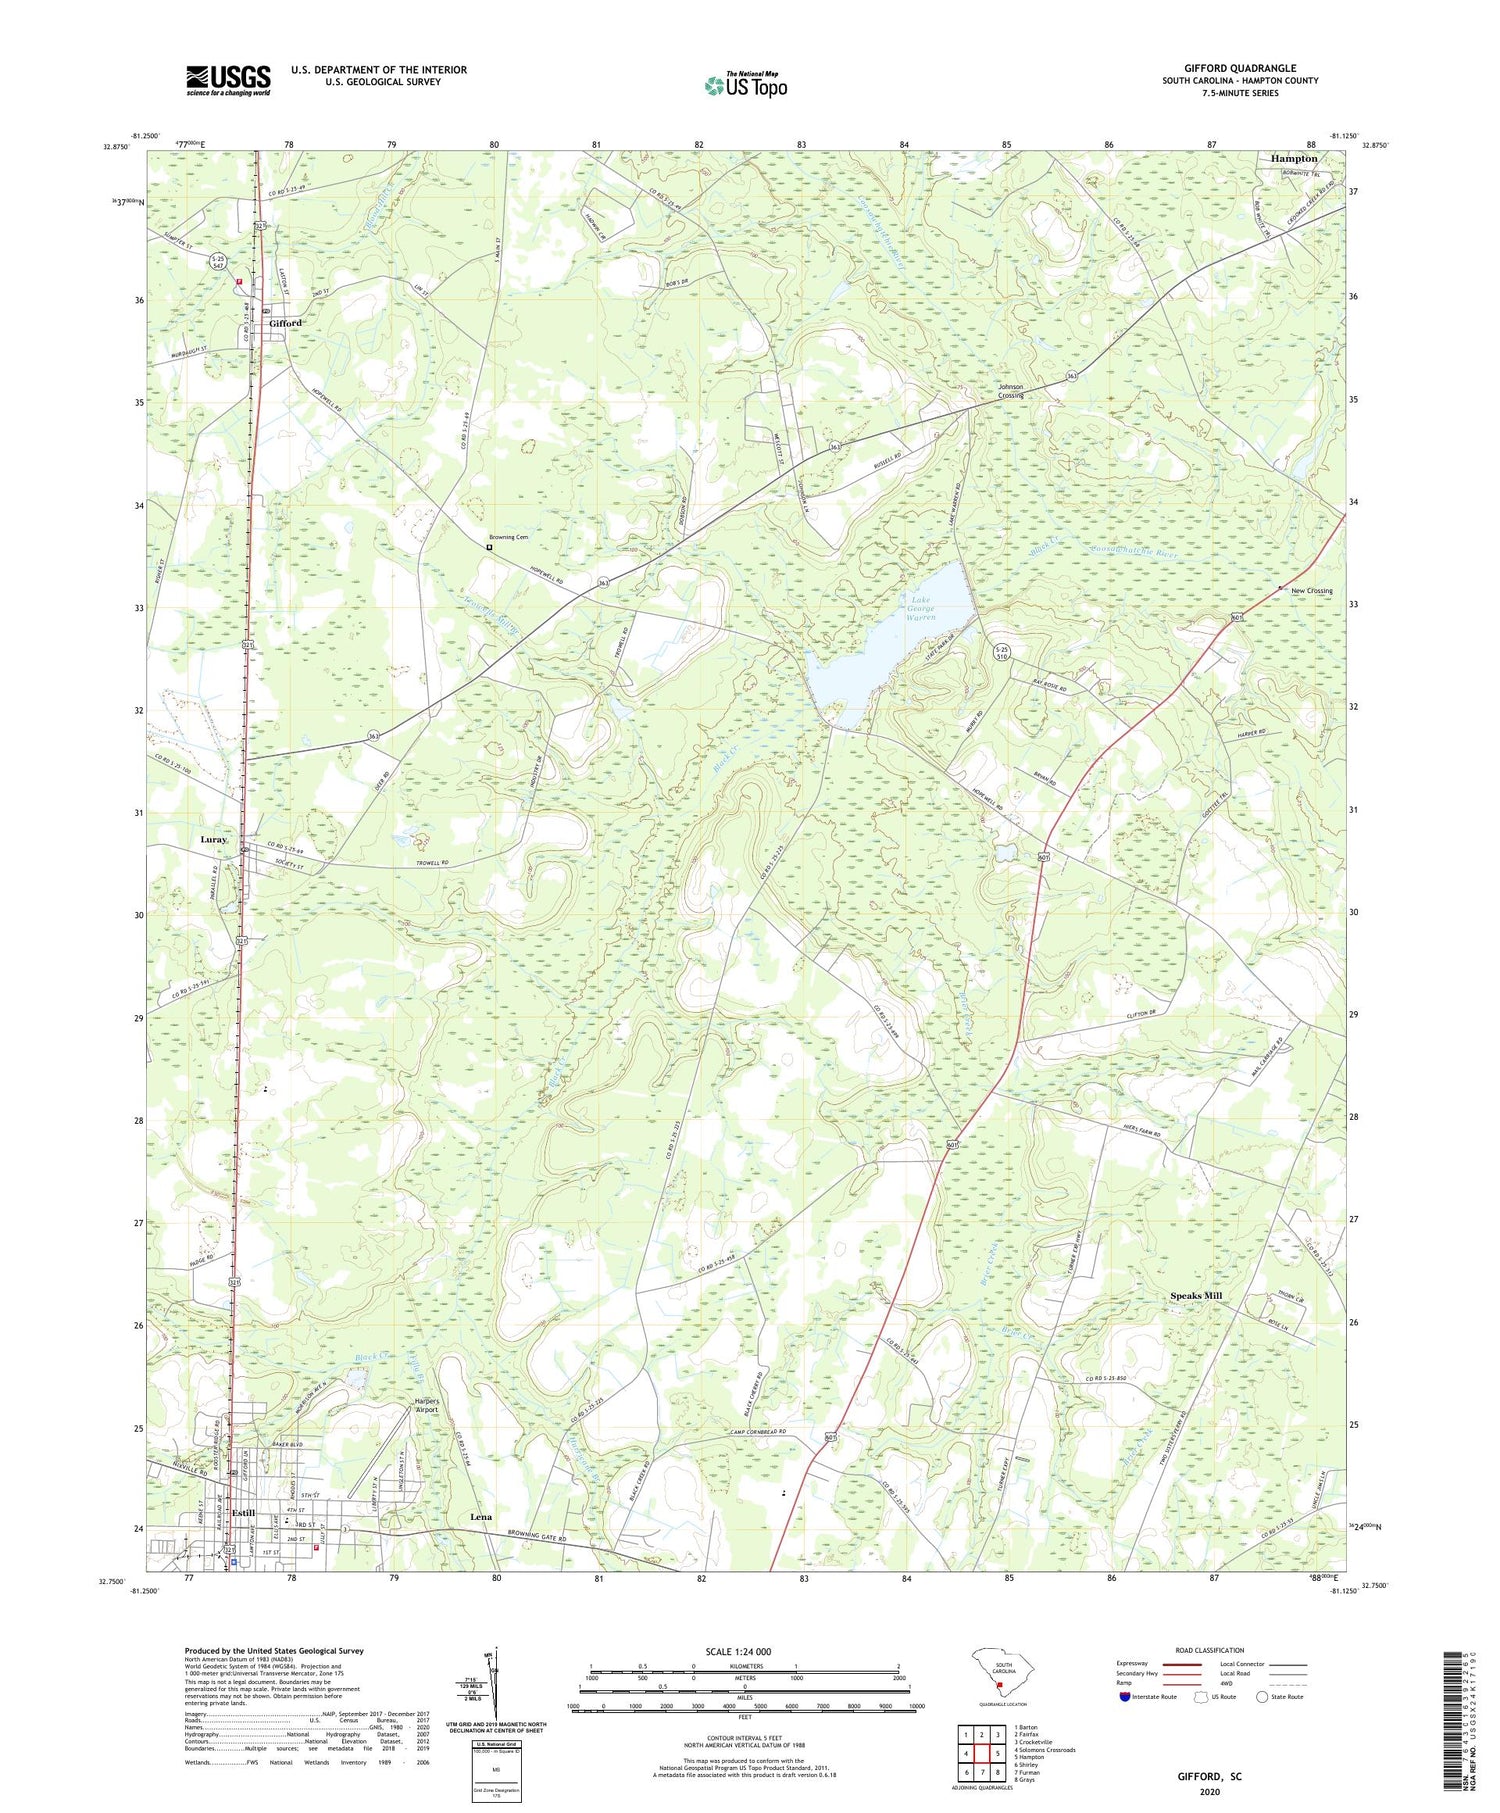 Gifford South Carolina US Topo Map Image